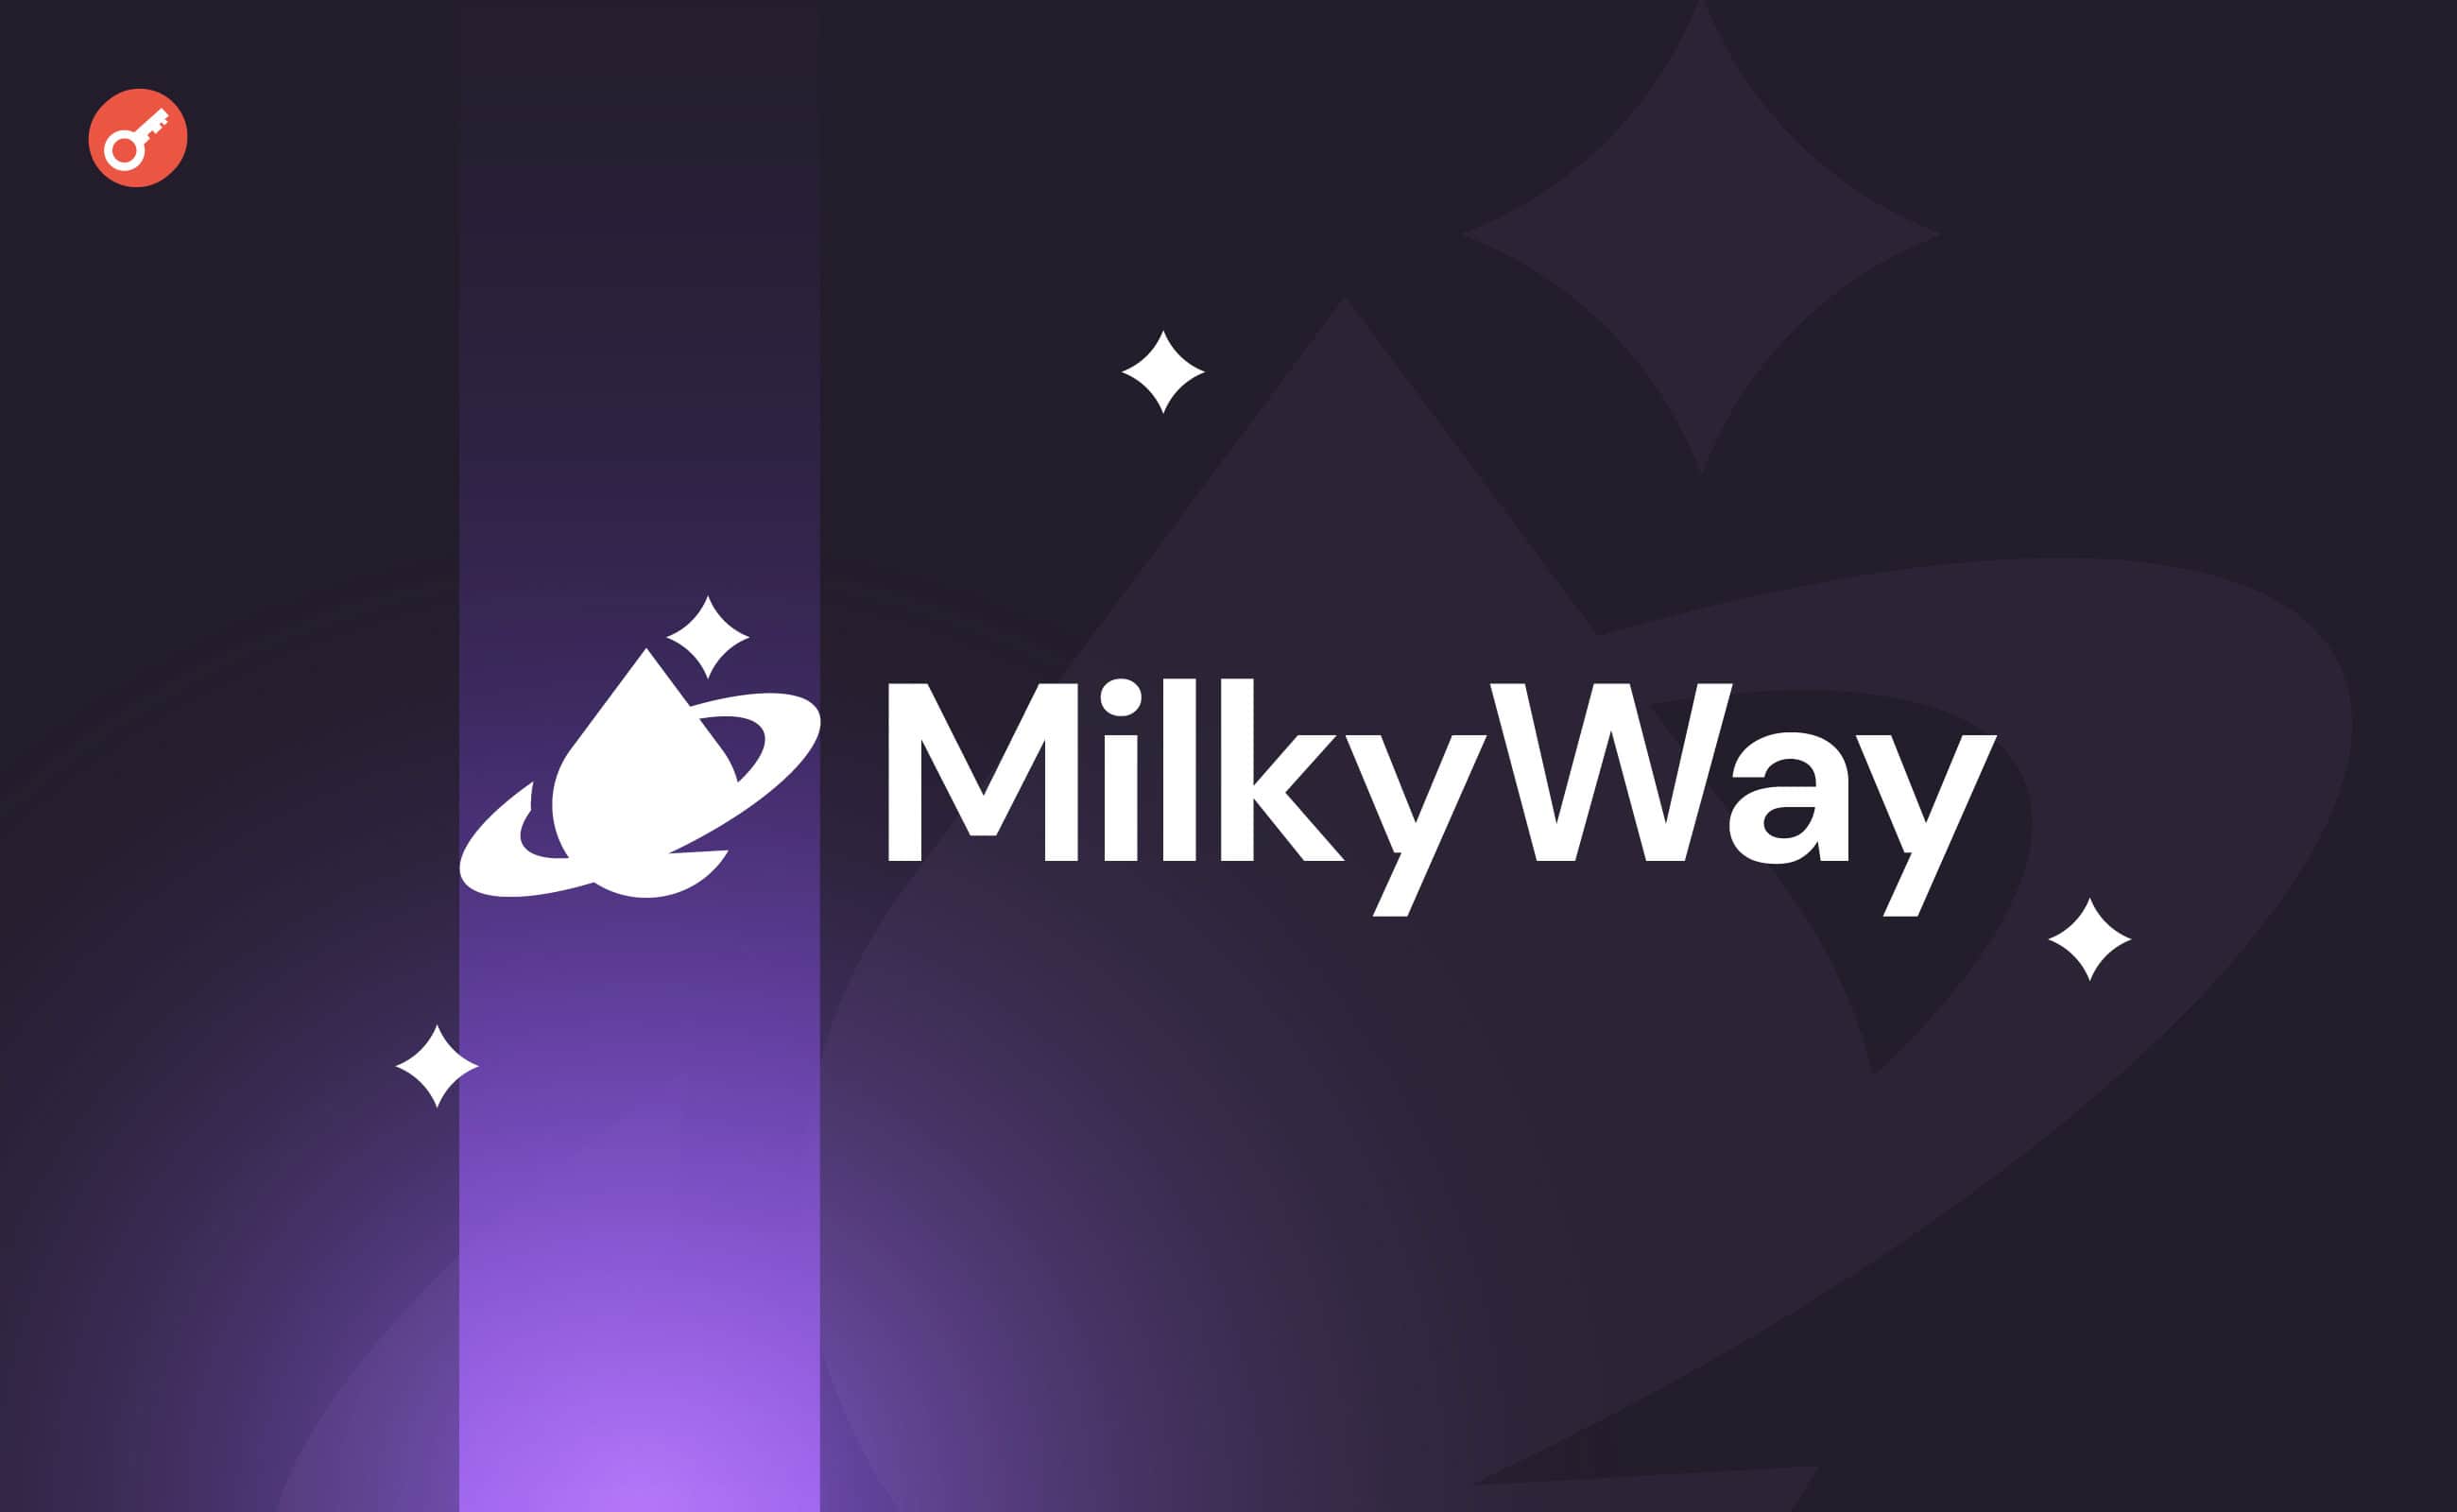 Протокол ликвидного стейкинга MilkyWay получил $5 млн инвестиций. Заглавный коллаж новости.